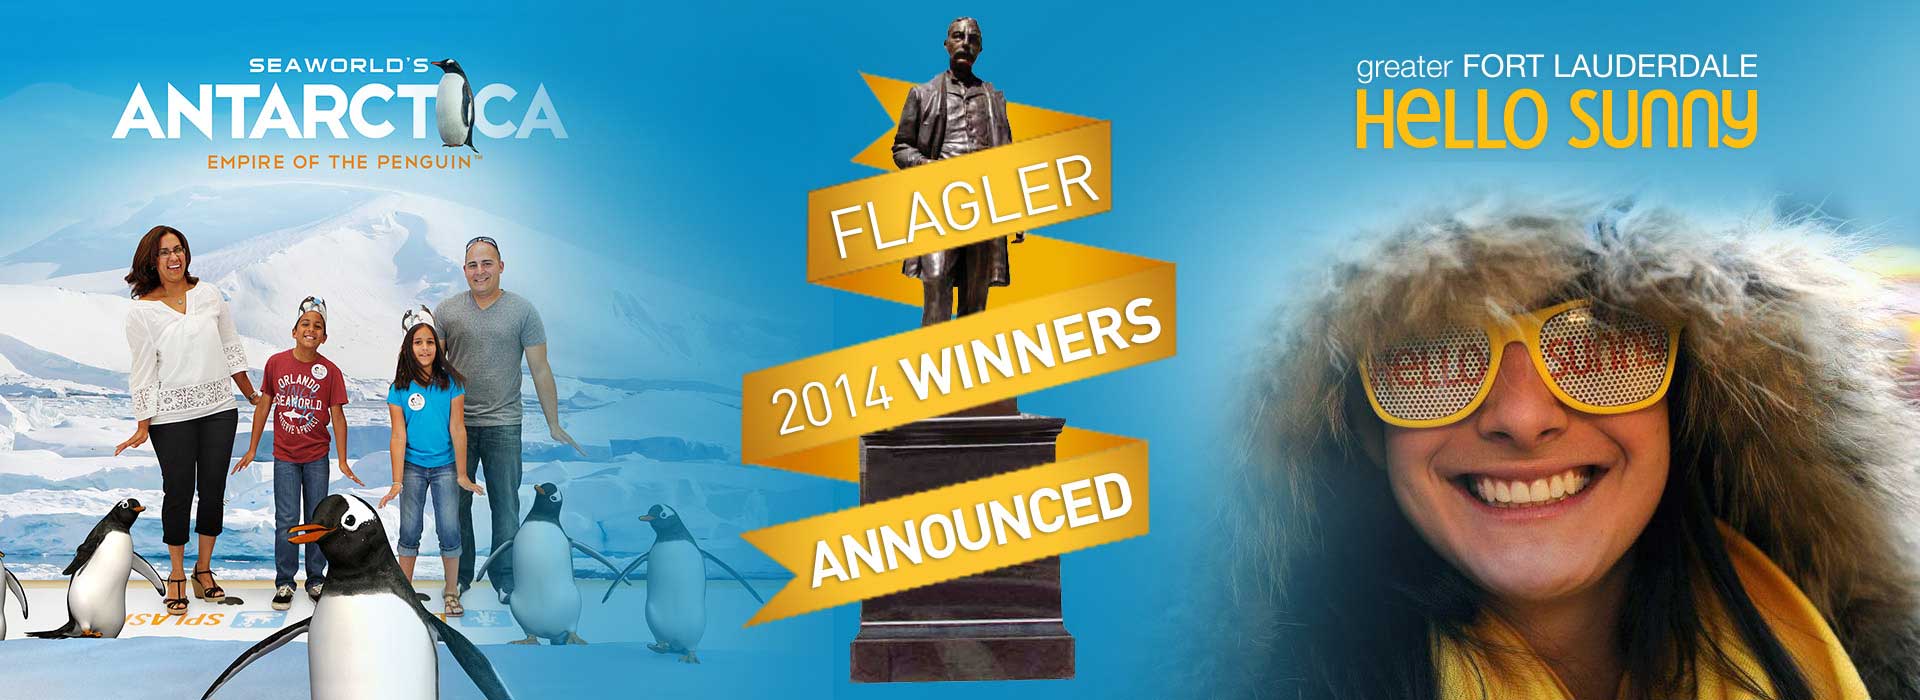 Flagler_2014_Hero